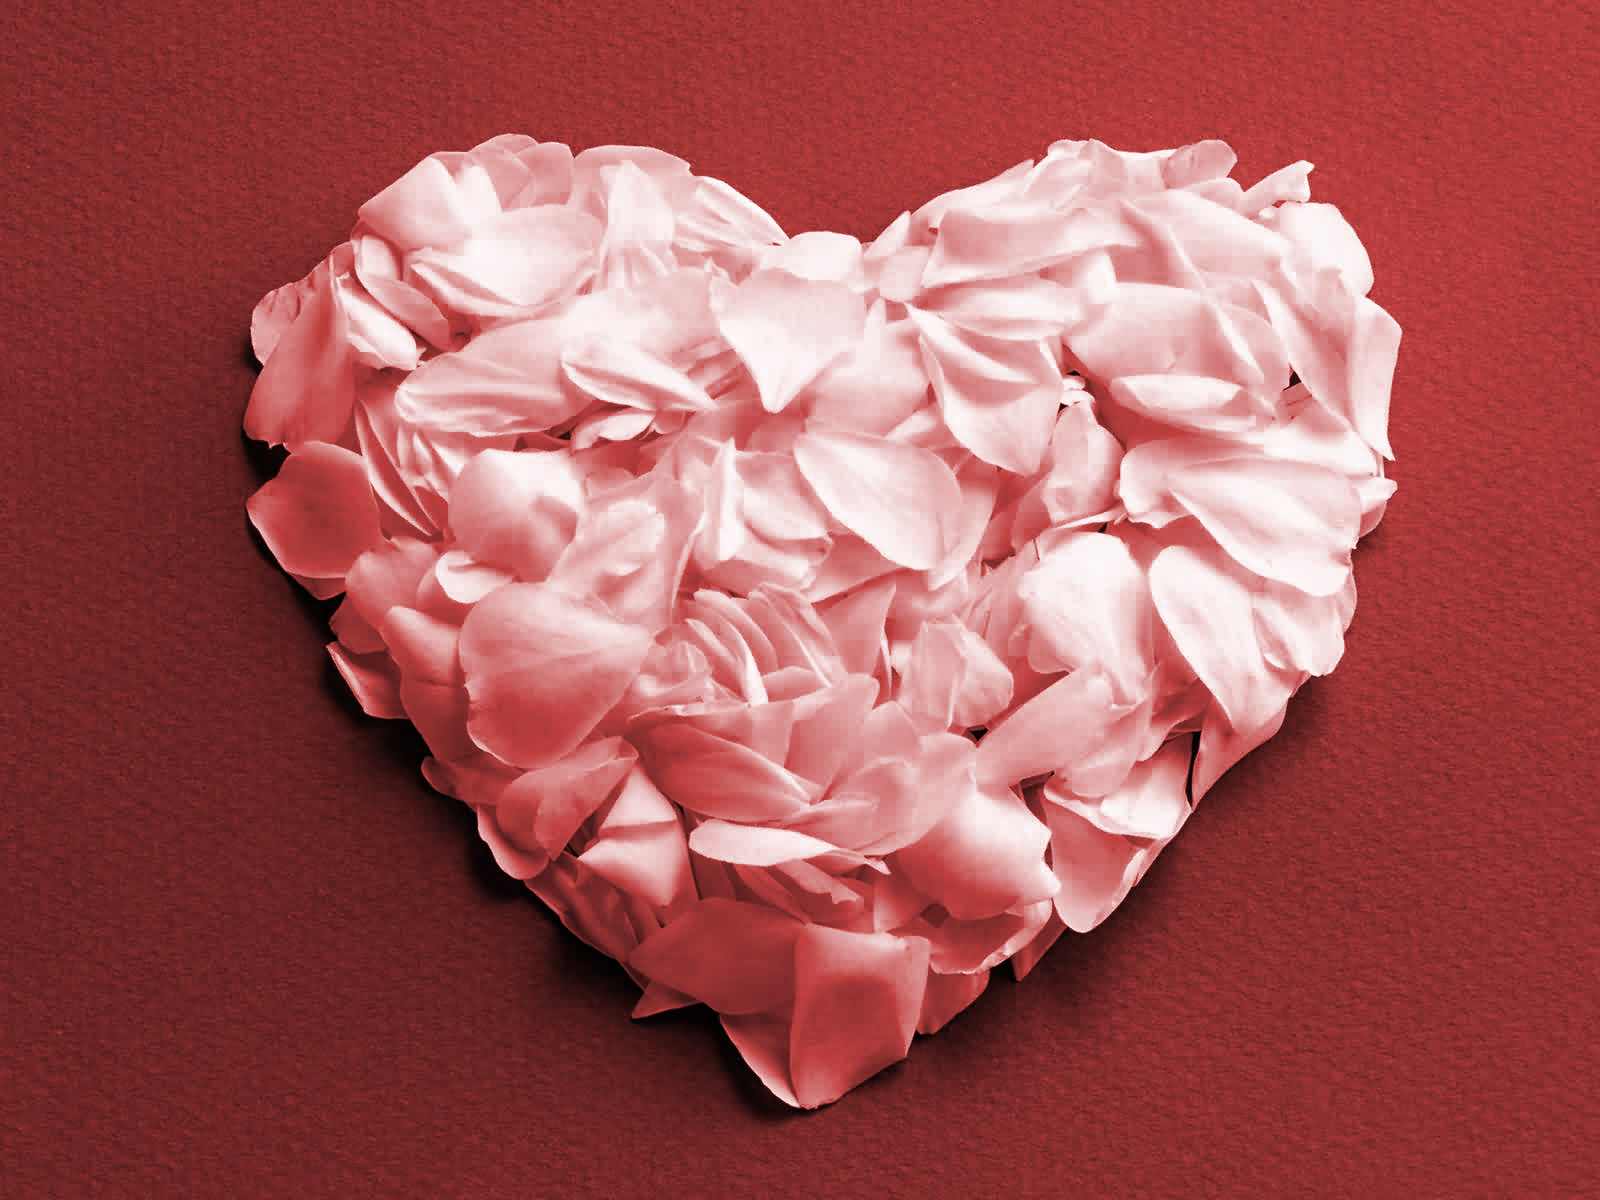 🔥 [47+] Wallpaper of Roses and Hearts | WallpaperSafari